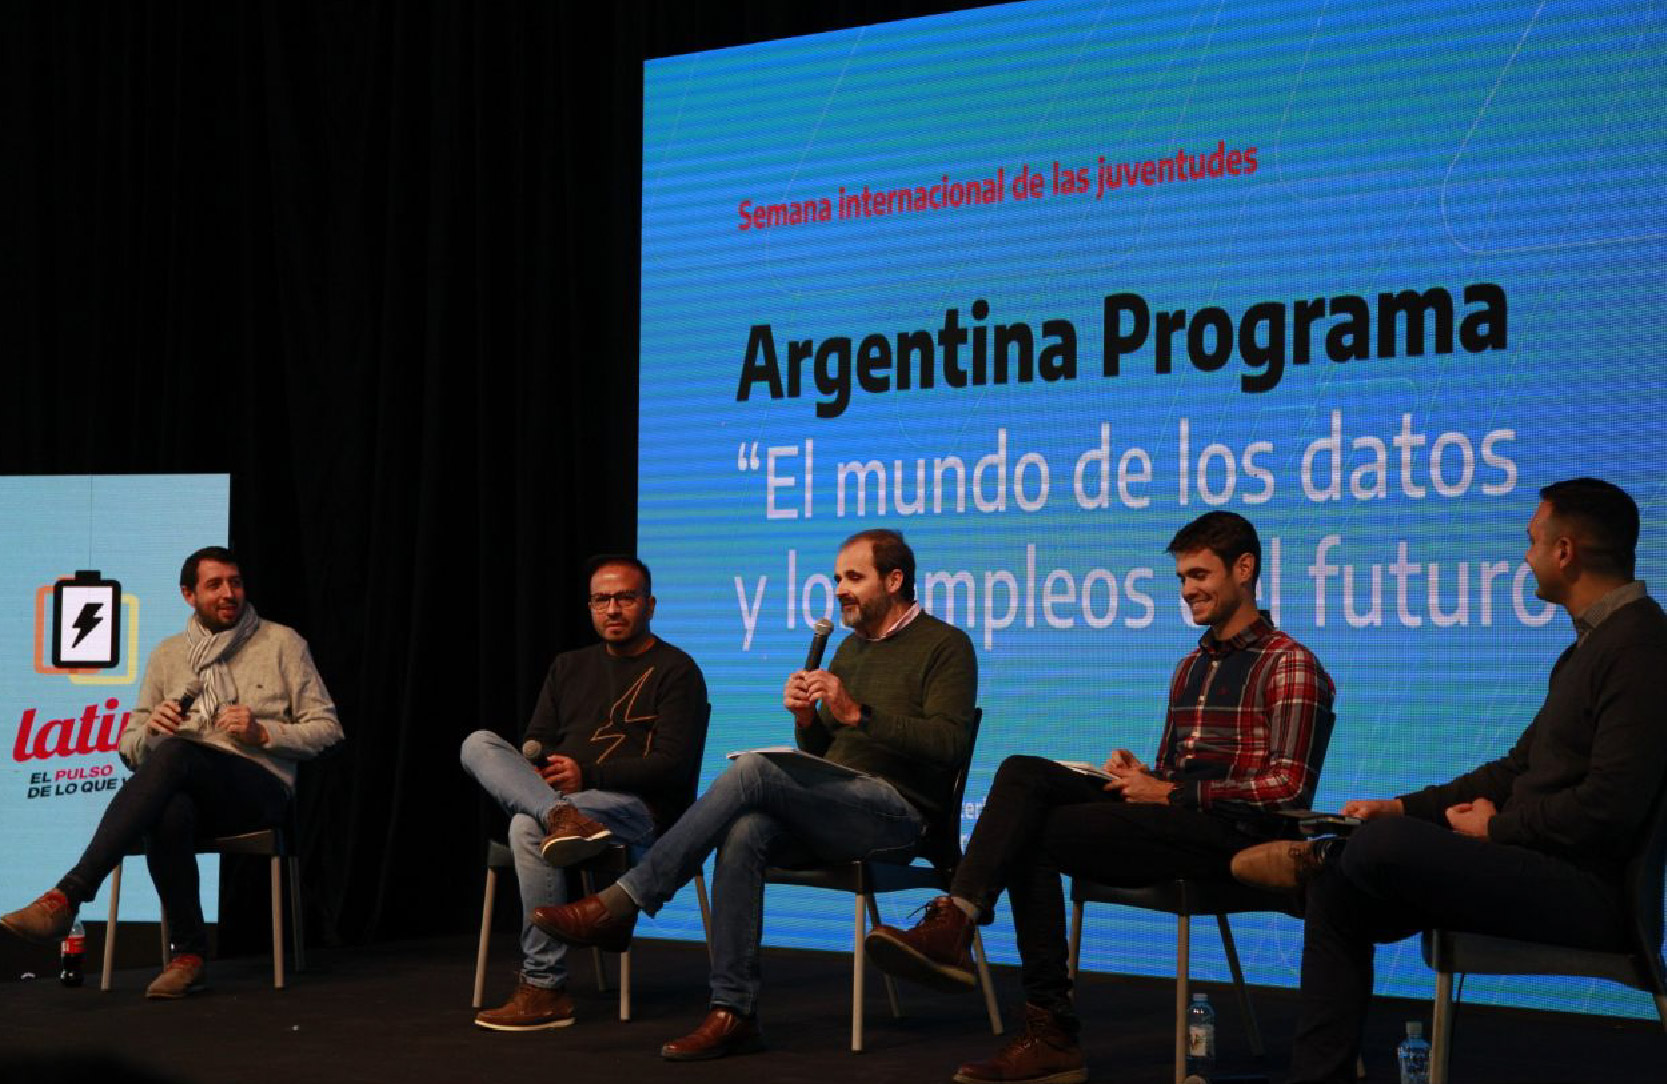 Argentina Programa Semana de las Juventudes